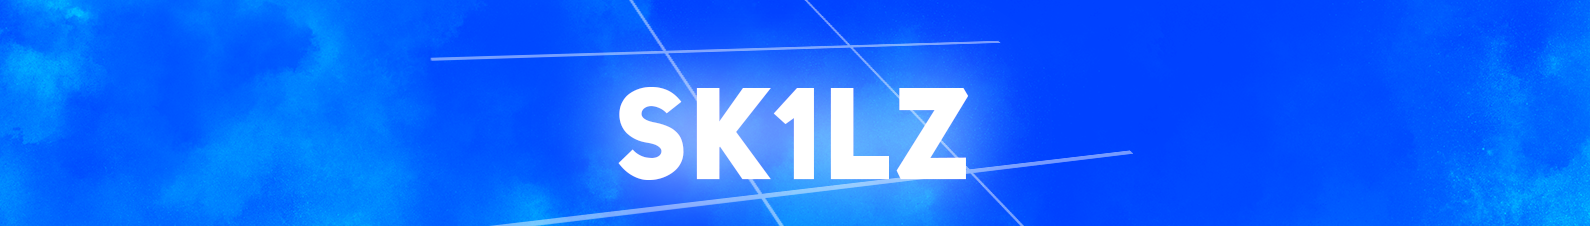 Sk1lz -_-'s profile banner